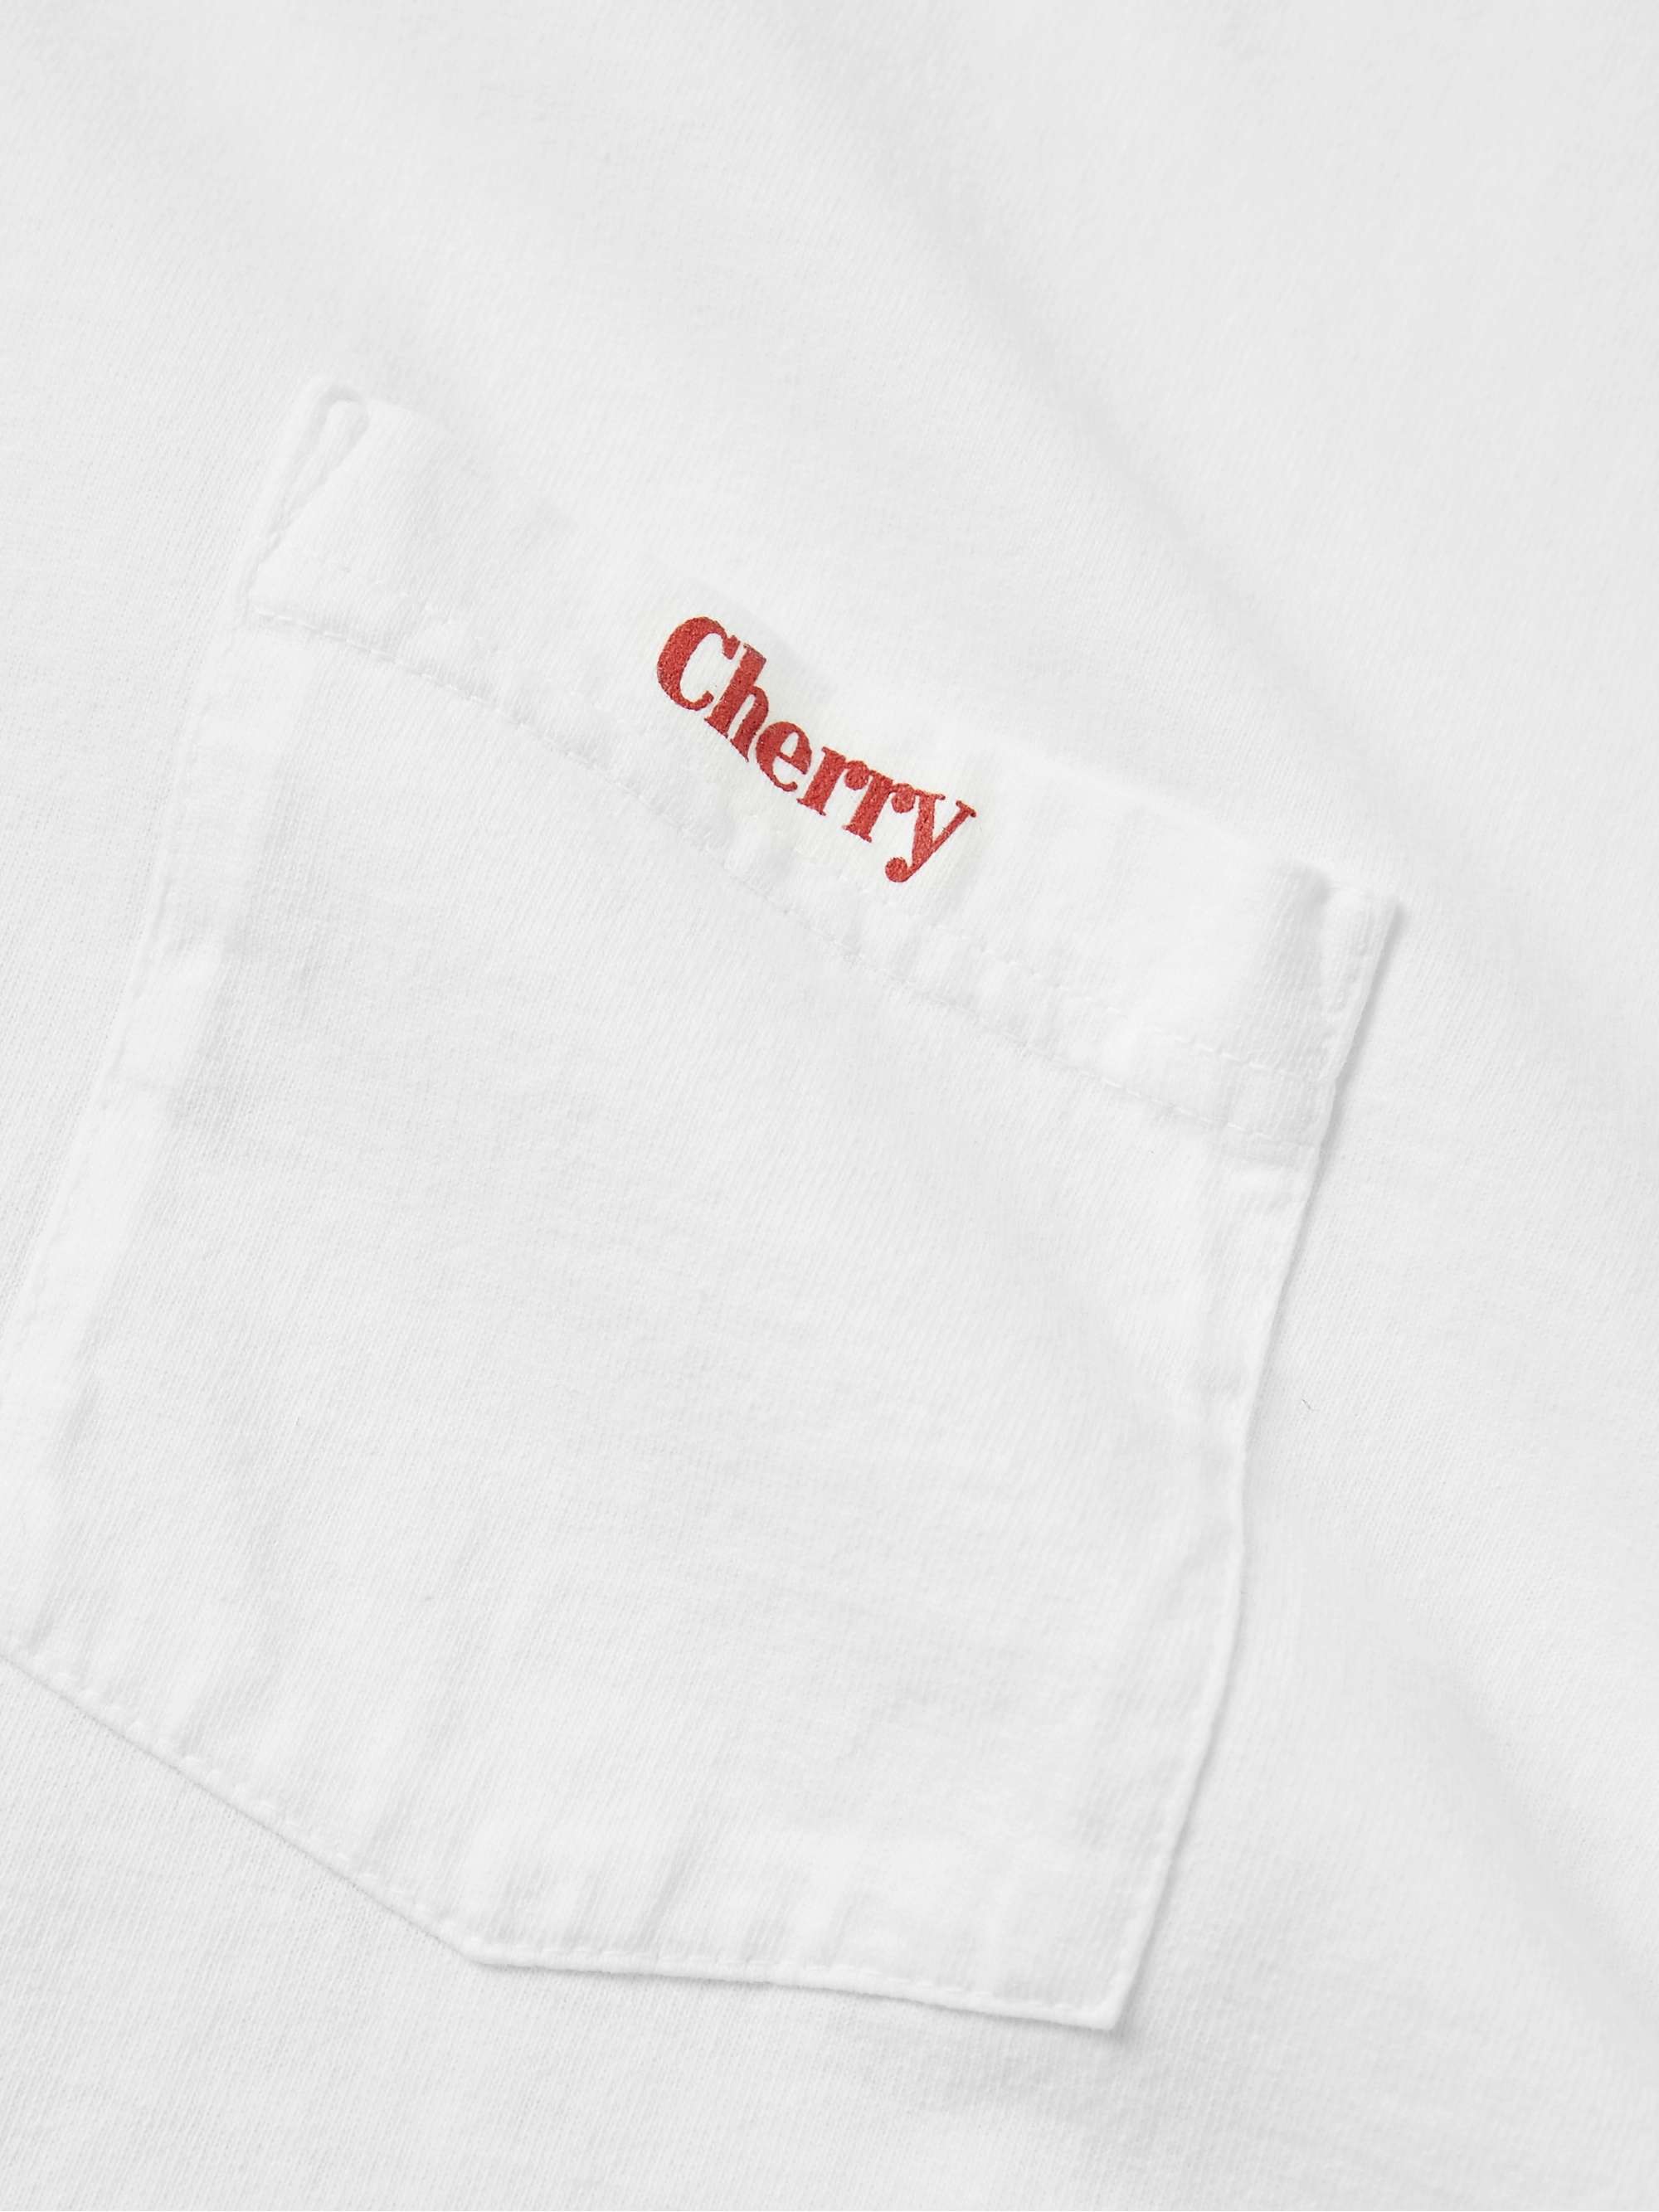 CHERRY LA Logo-Print Cotton-Jersey T-Shirt